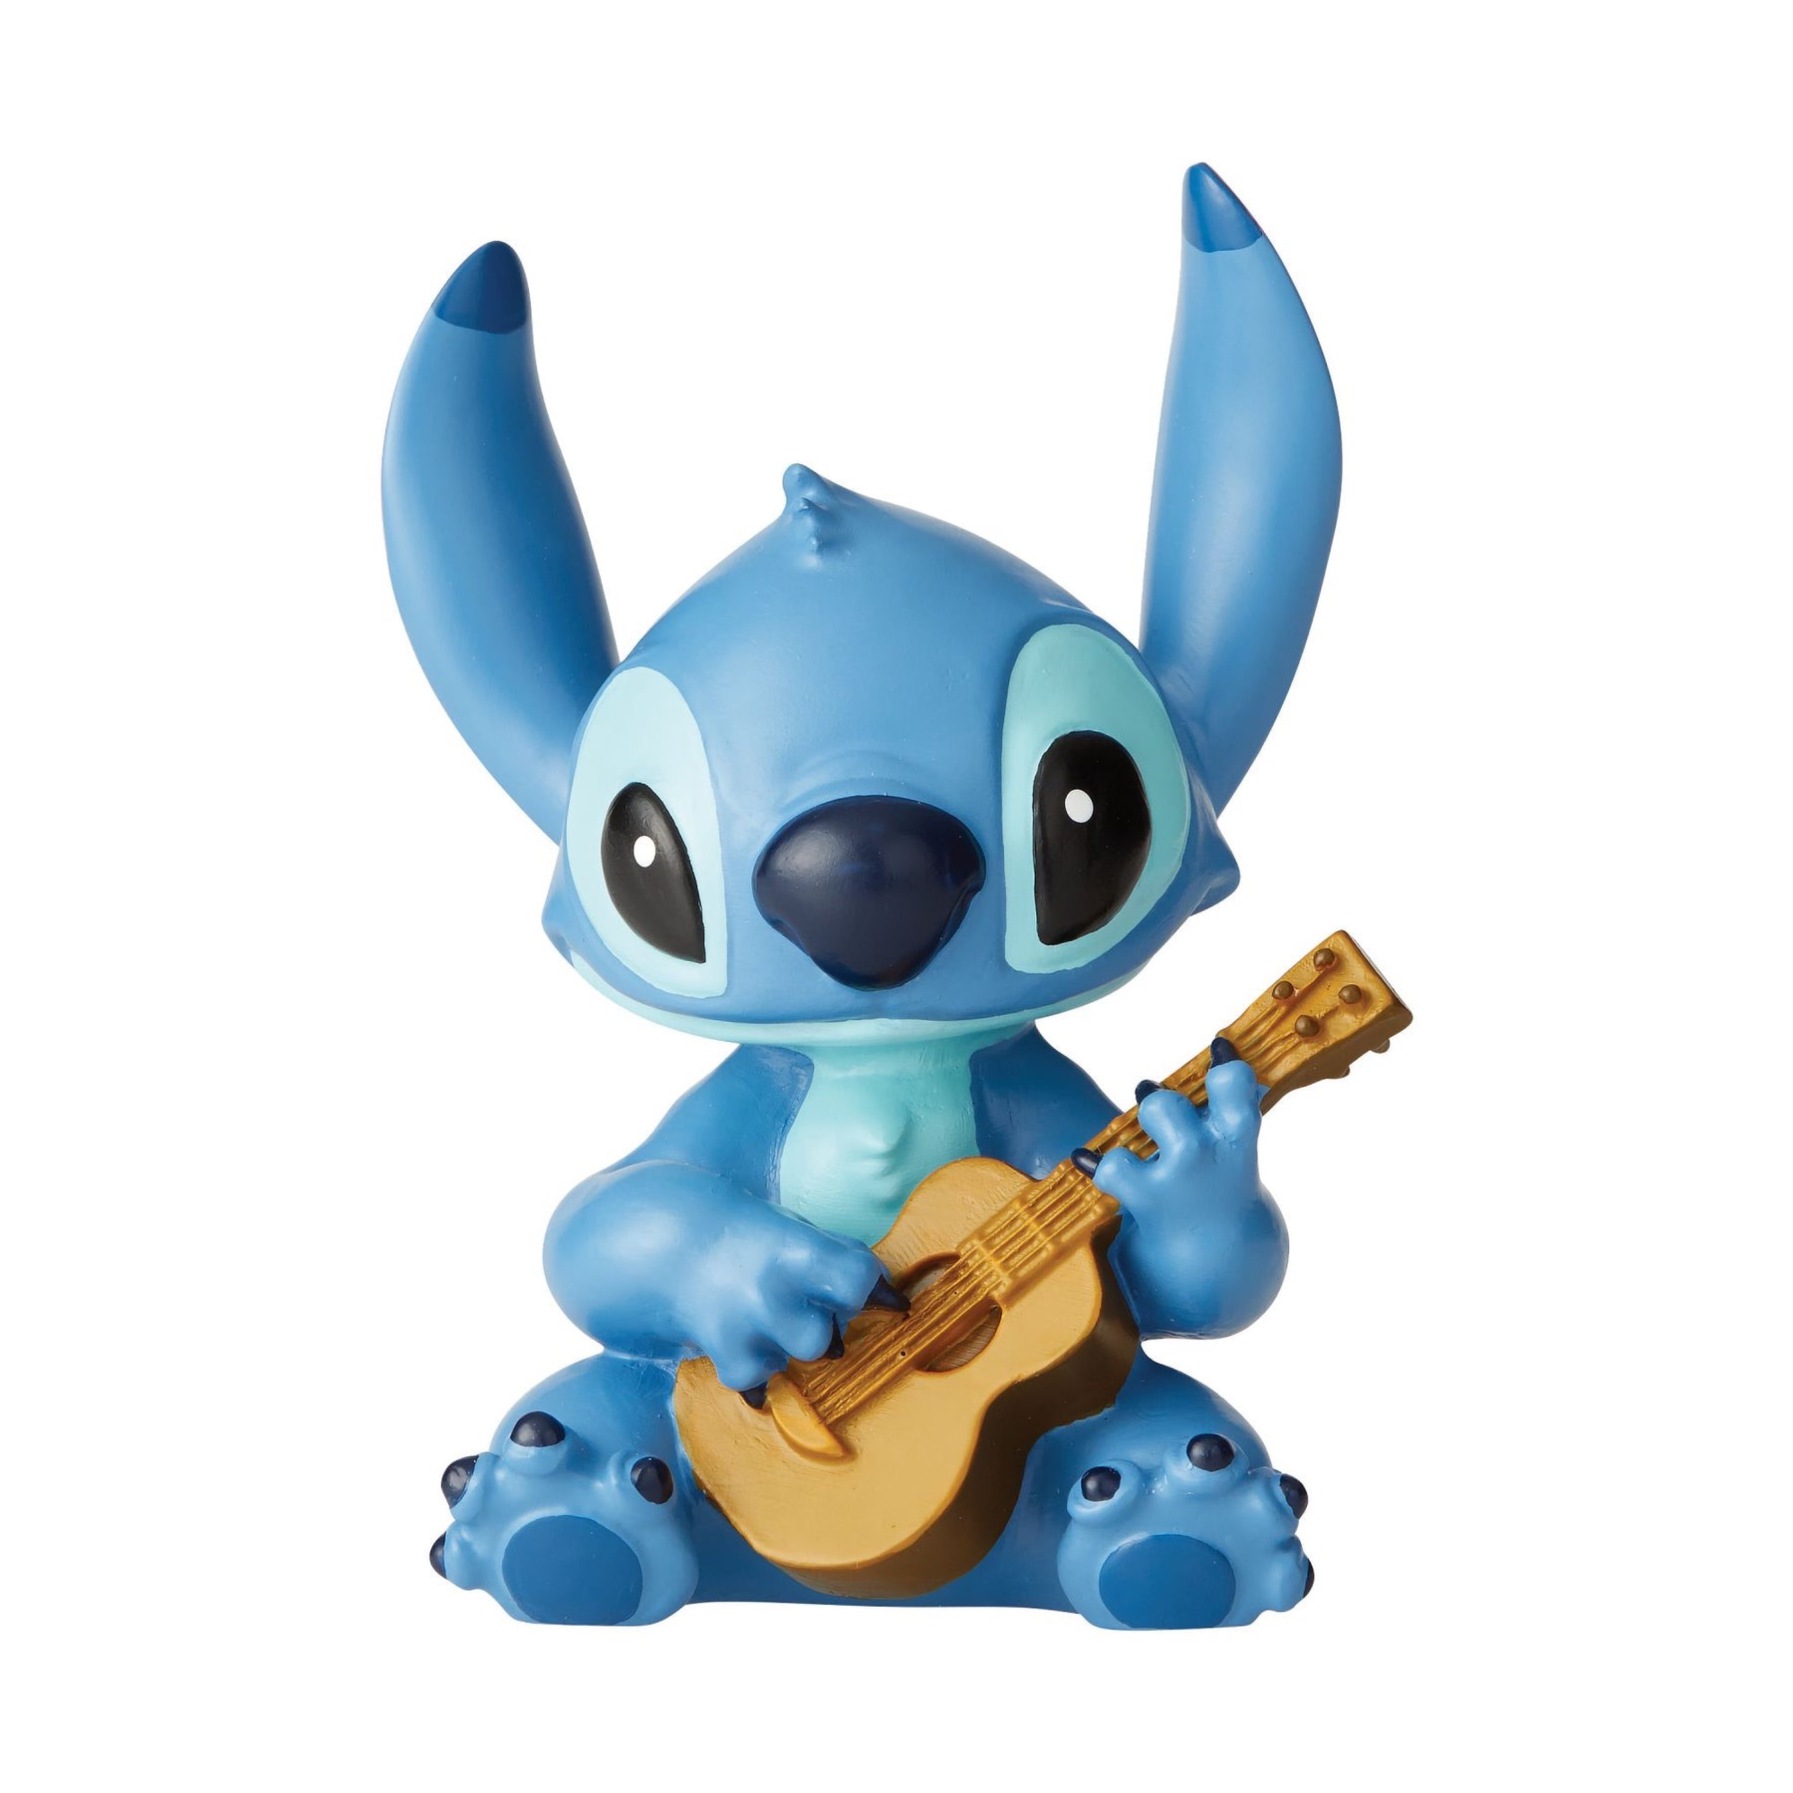  فیگور استیچ Stitch with Guitar 